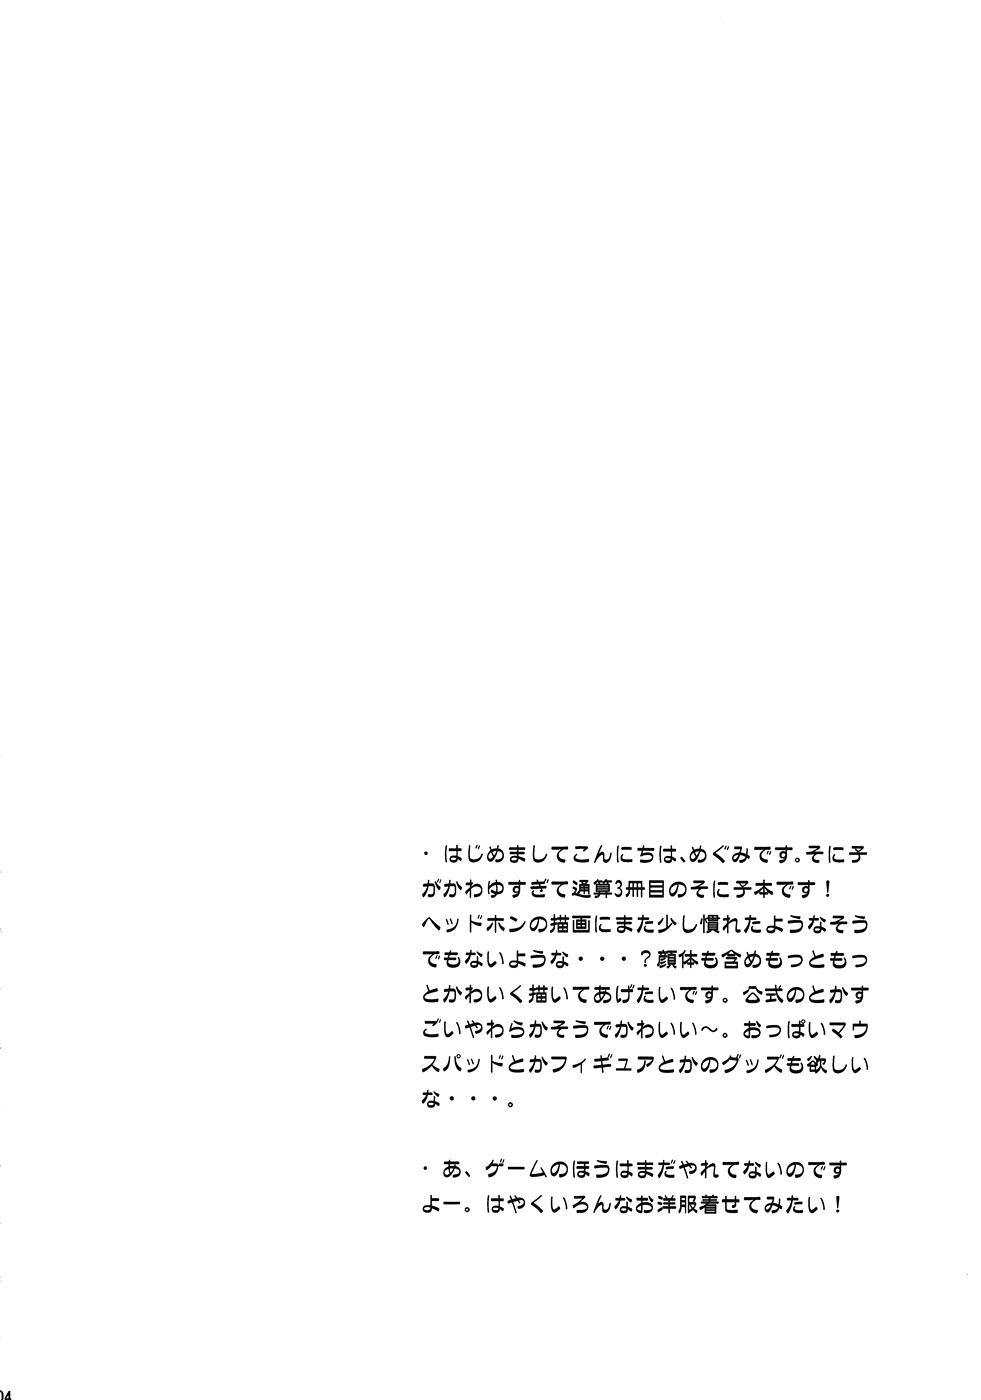 Twinks Takakuteki Idol - Super sonico Shaven - Page 3